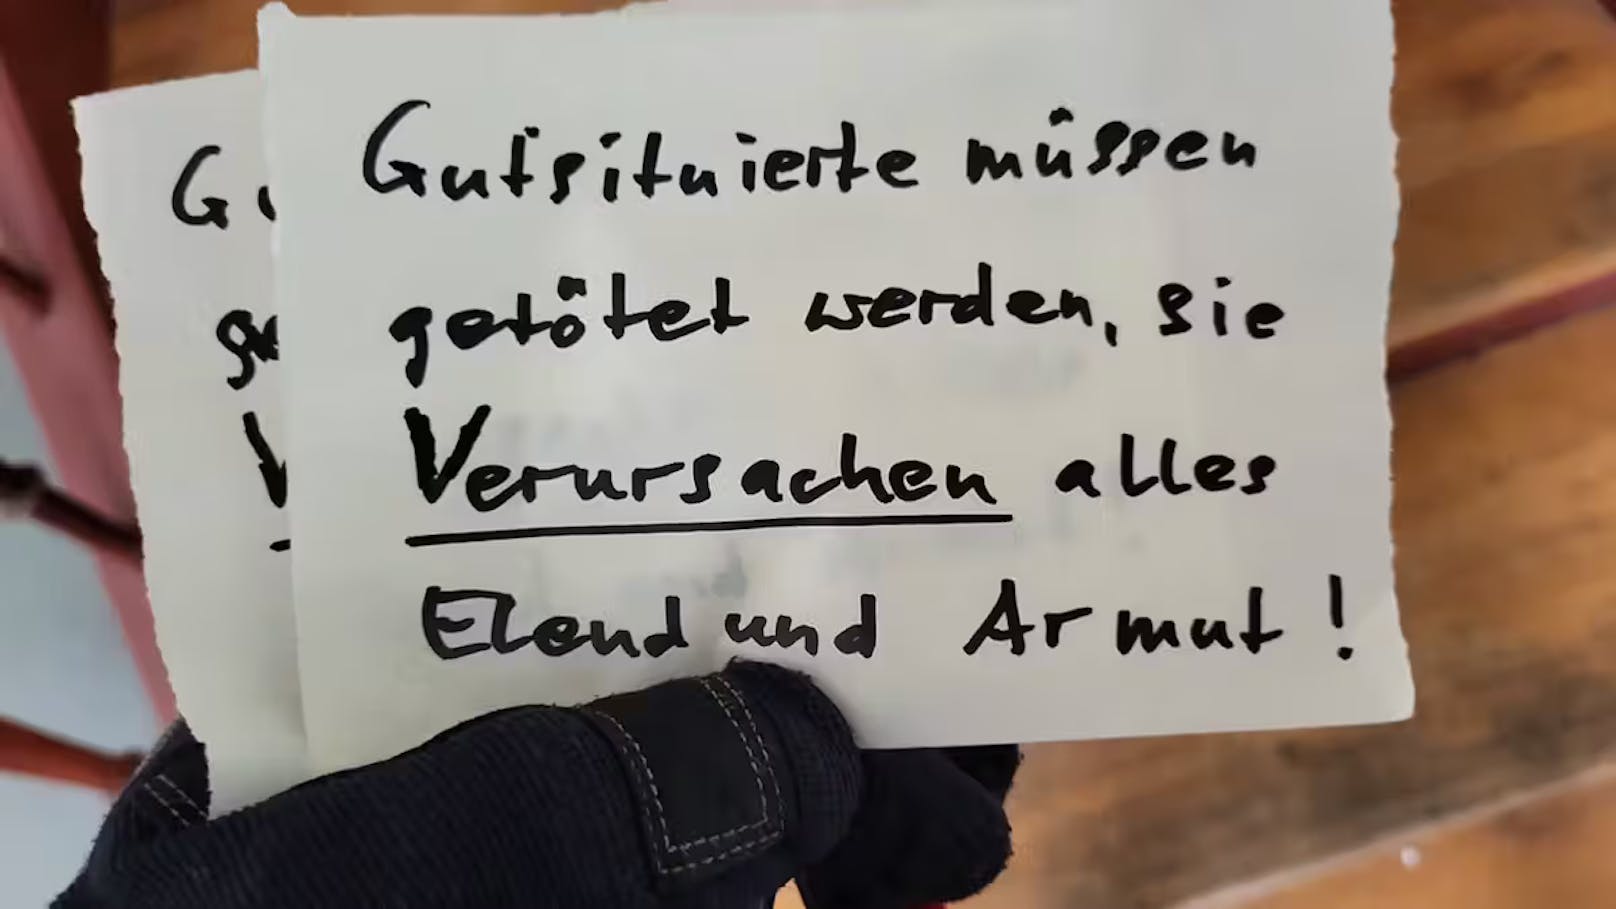 Skandal-Zettel: "Gutsituierte müssen getötet werden"